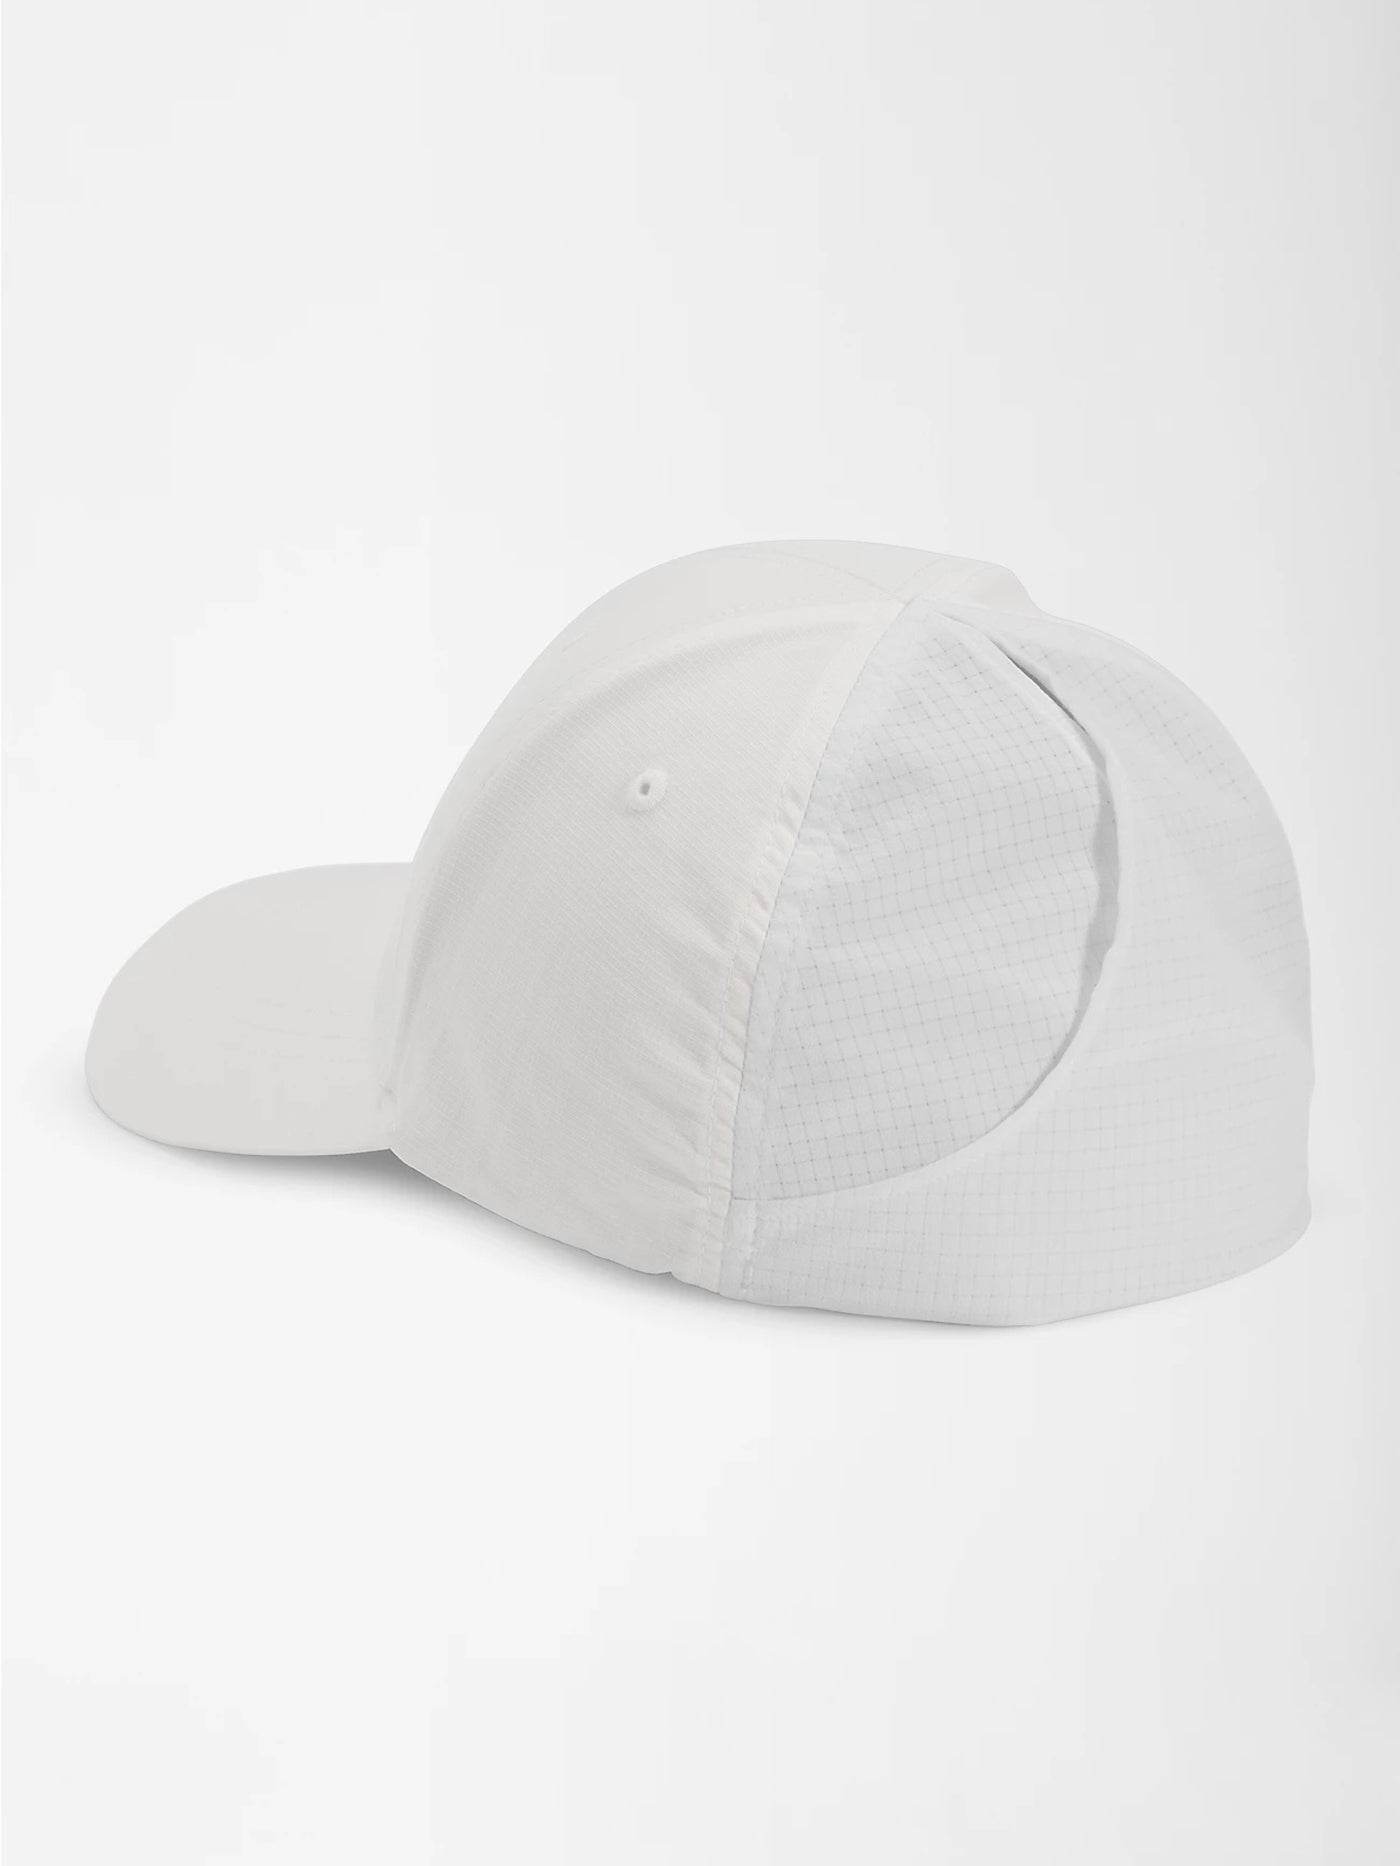 The North Face Horizon Flexfit Hat